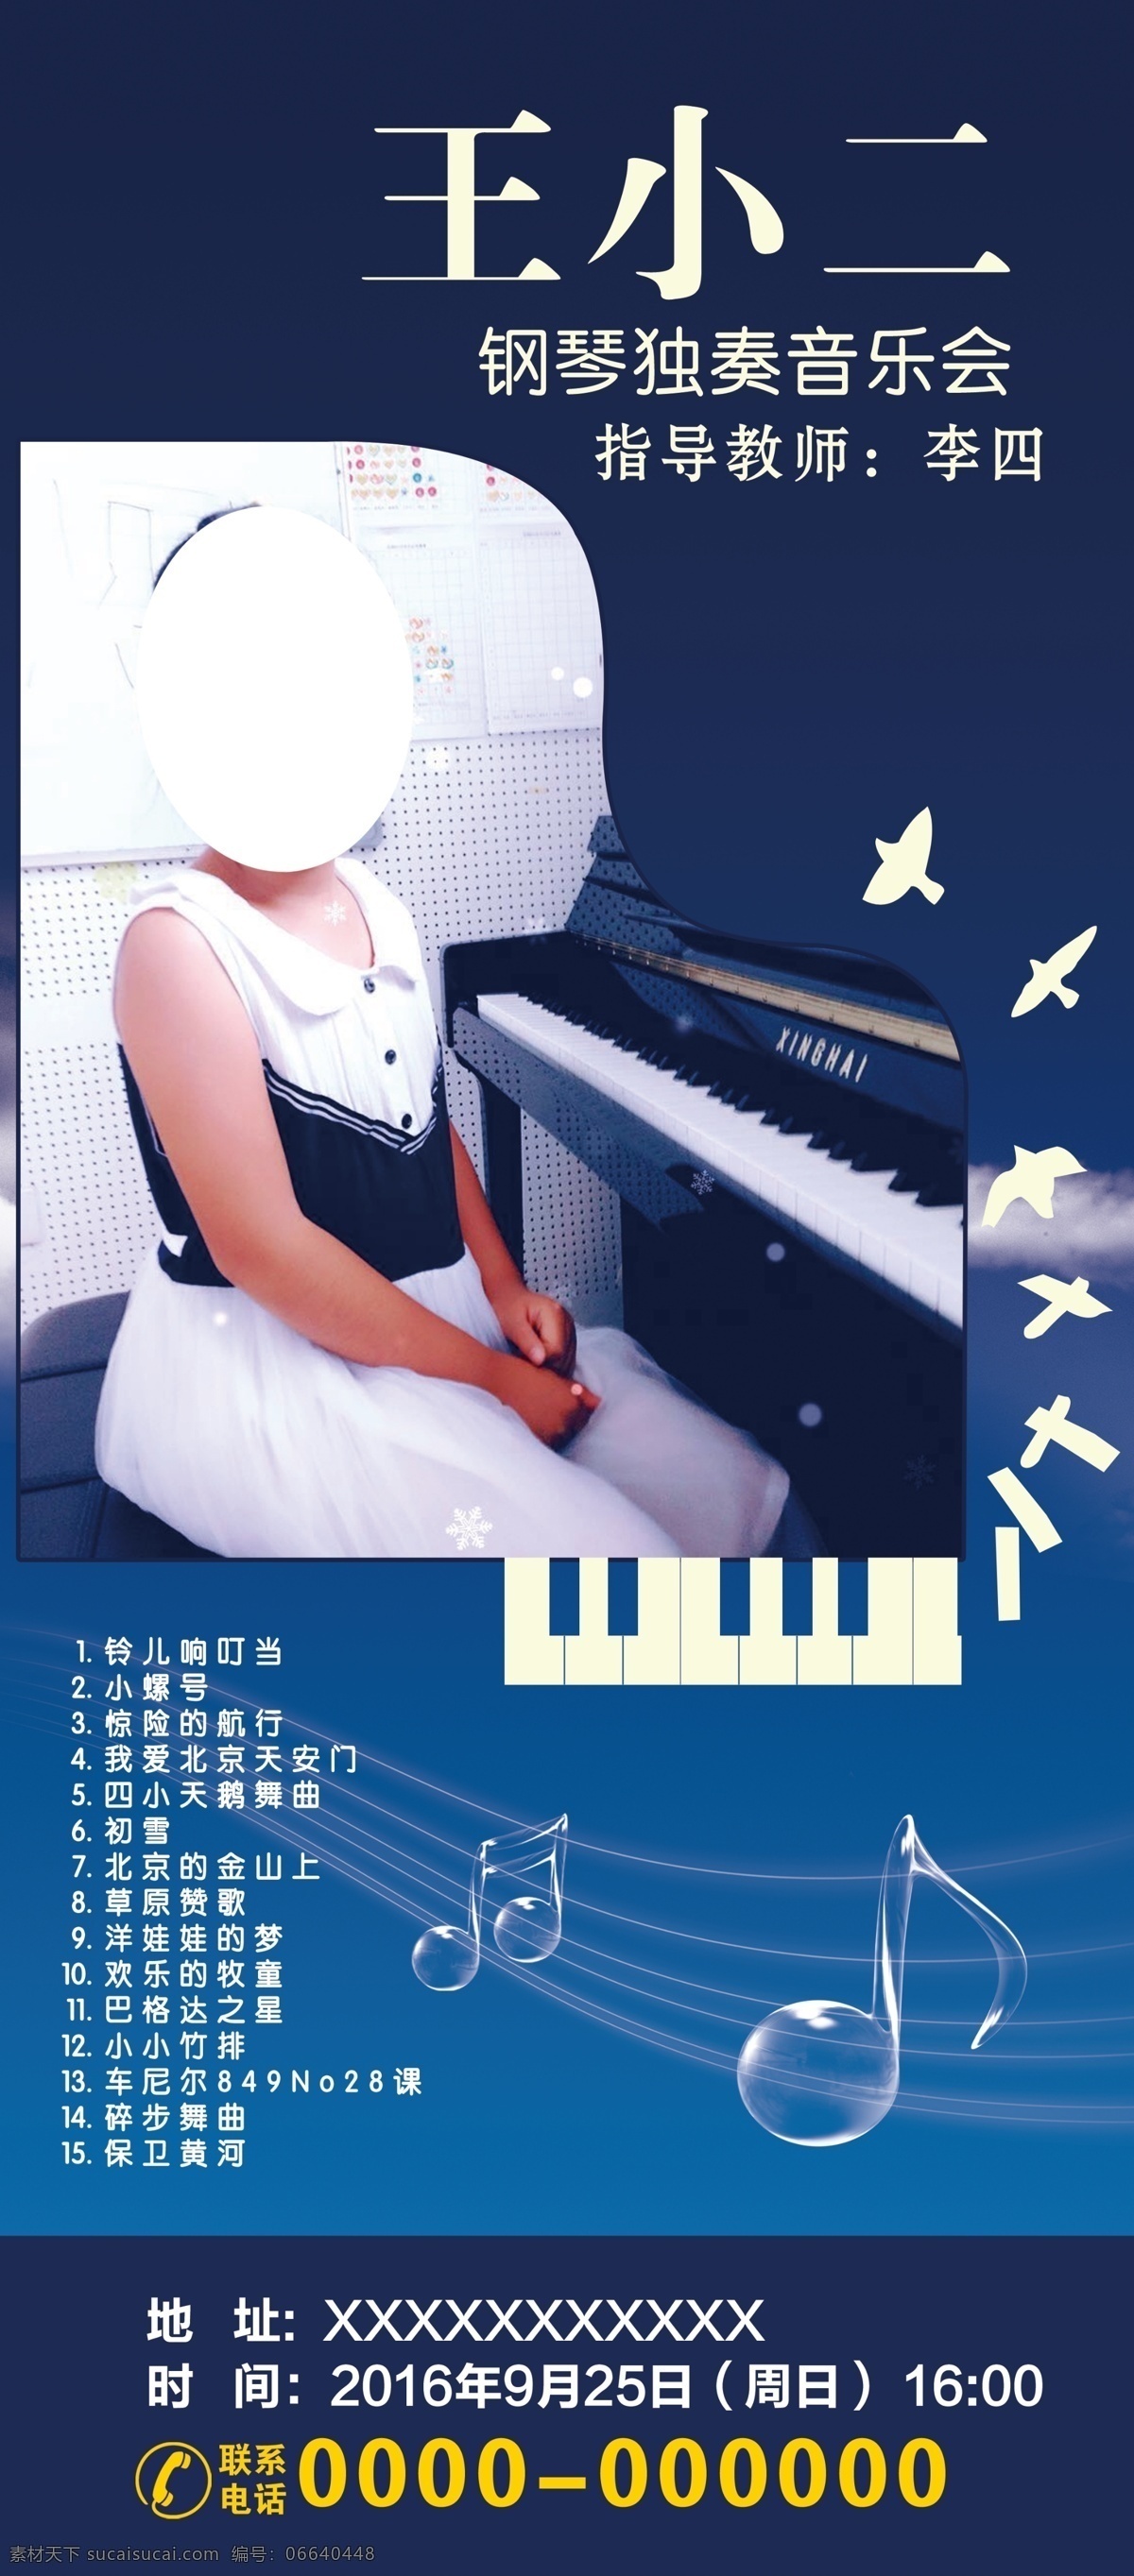 展架 钢琴 个人 独奏音乐会 蓝色背景 音乐符号 人物 联系电话 海报